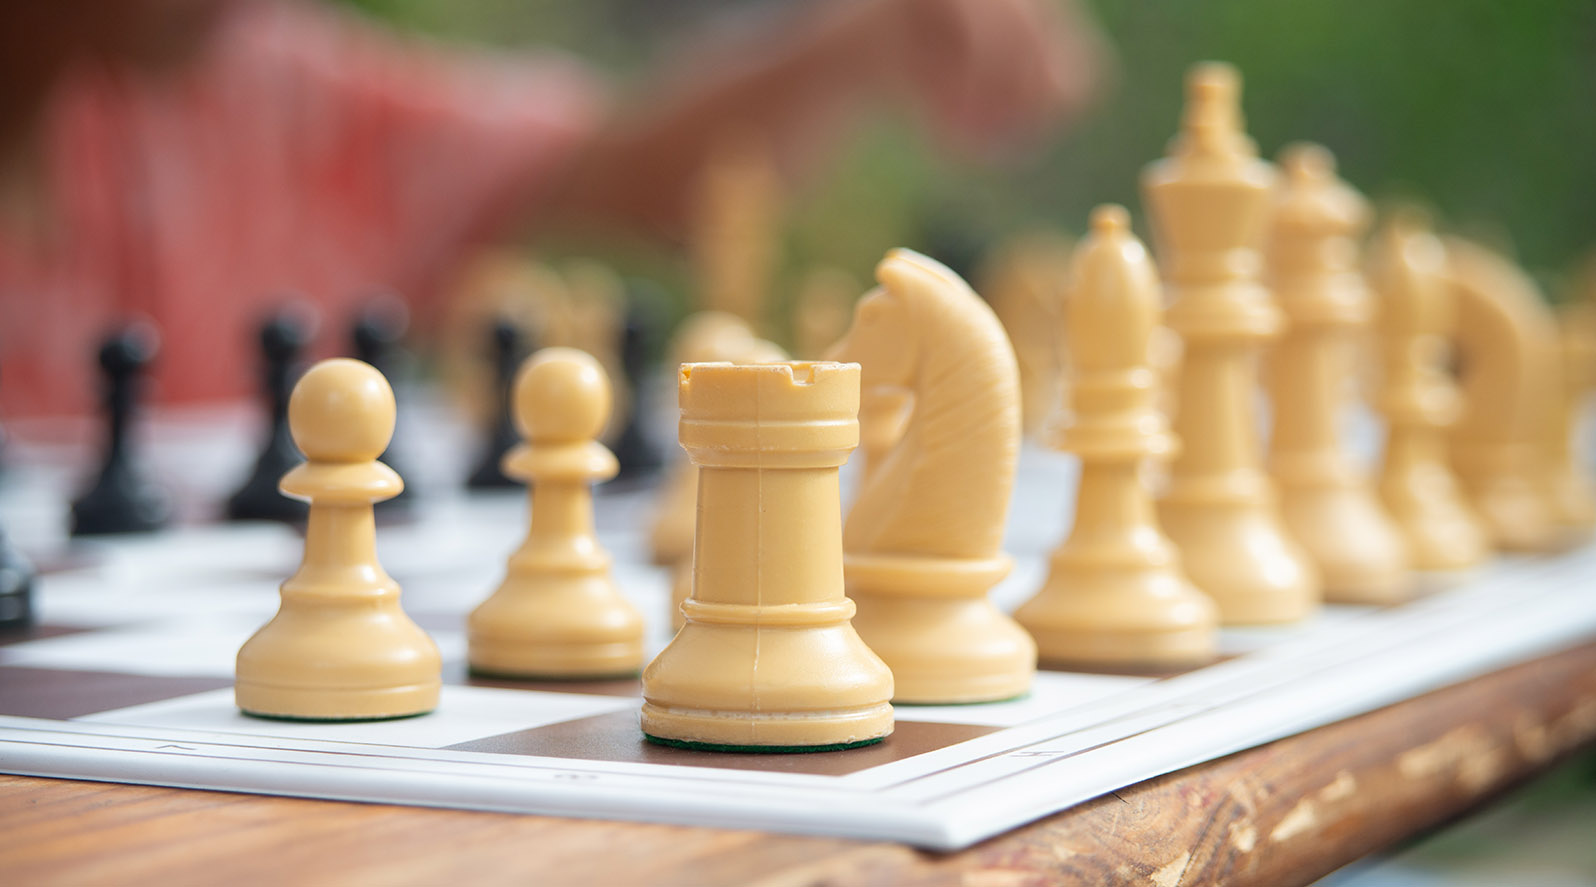 Carmo vai sediar o 1º Torneio Aberto de Xadrez com premiações para